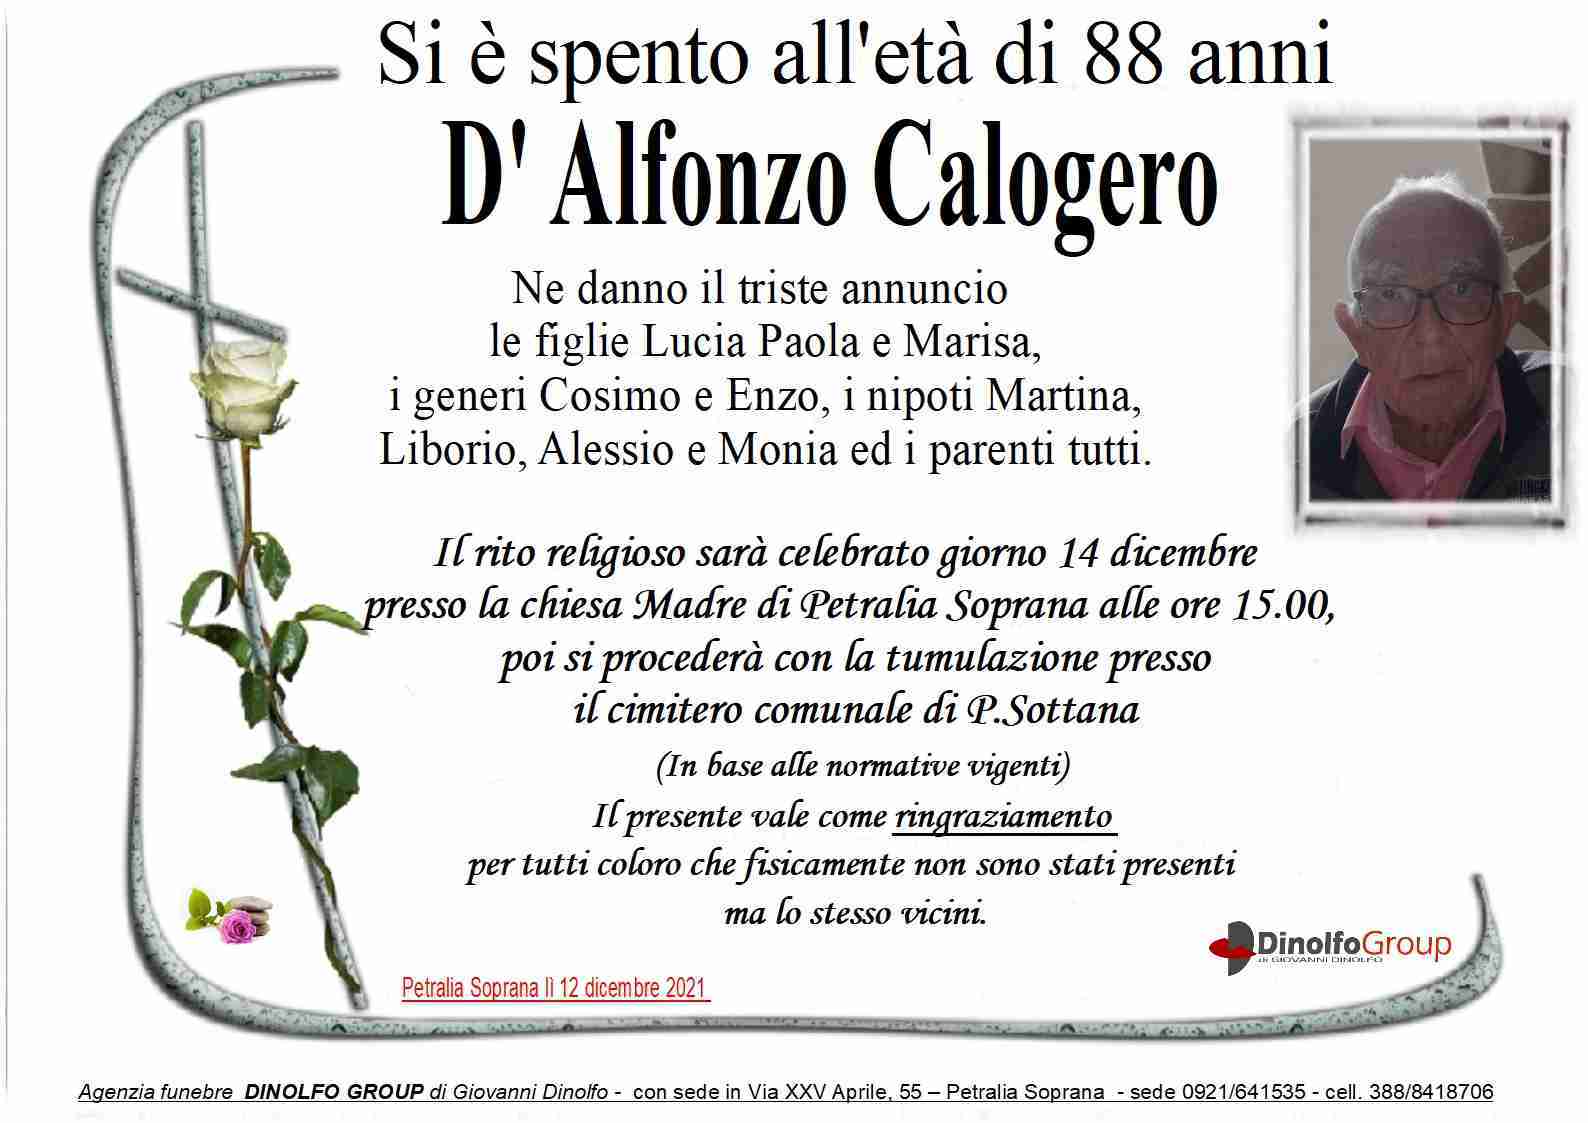 Calogero D'Alfonzo